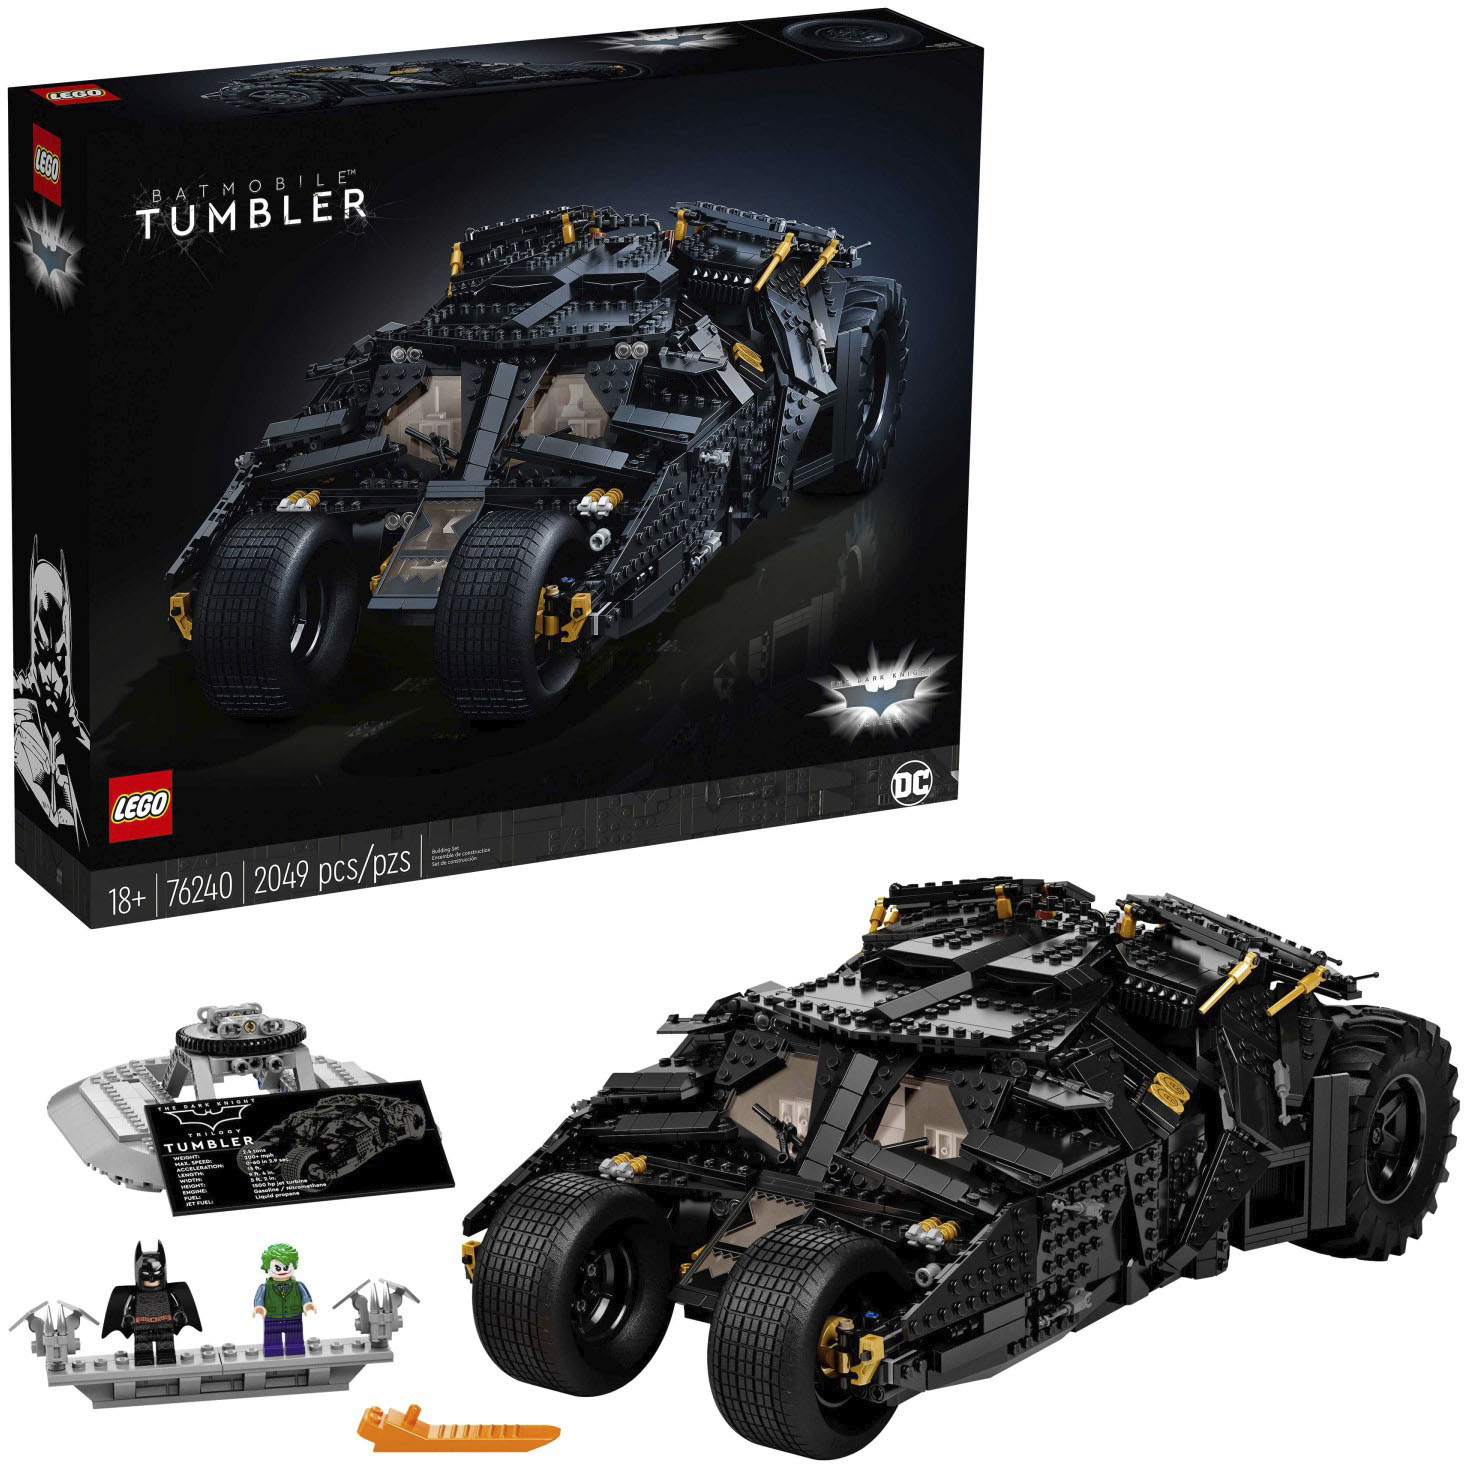 ansvar Indstilling marv LEGO Super Heroes Batmobile Tumbler 76240 6365778 - Best Buy